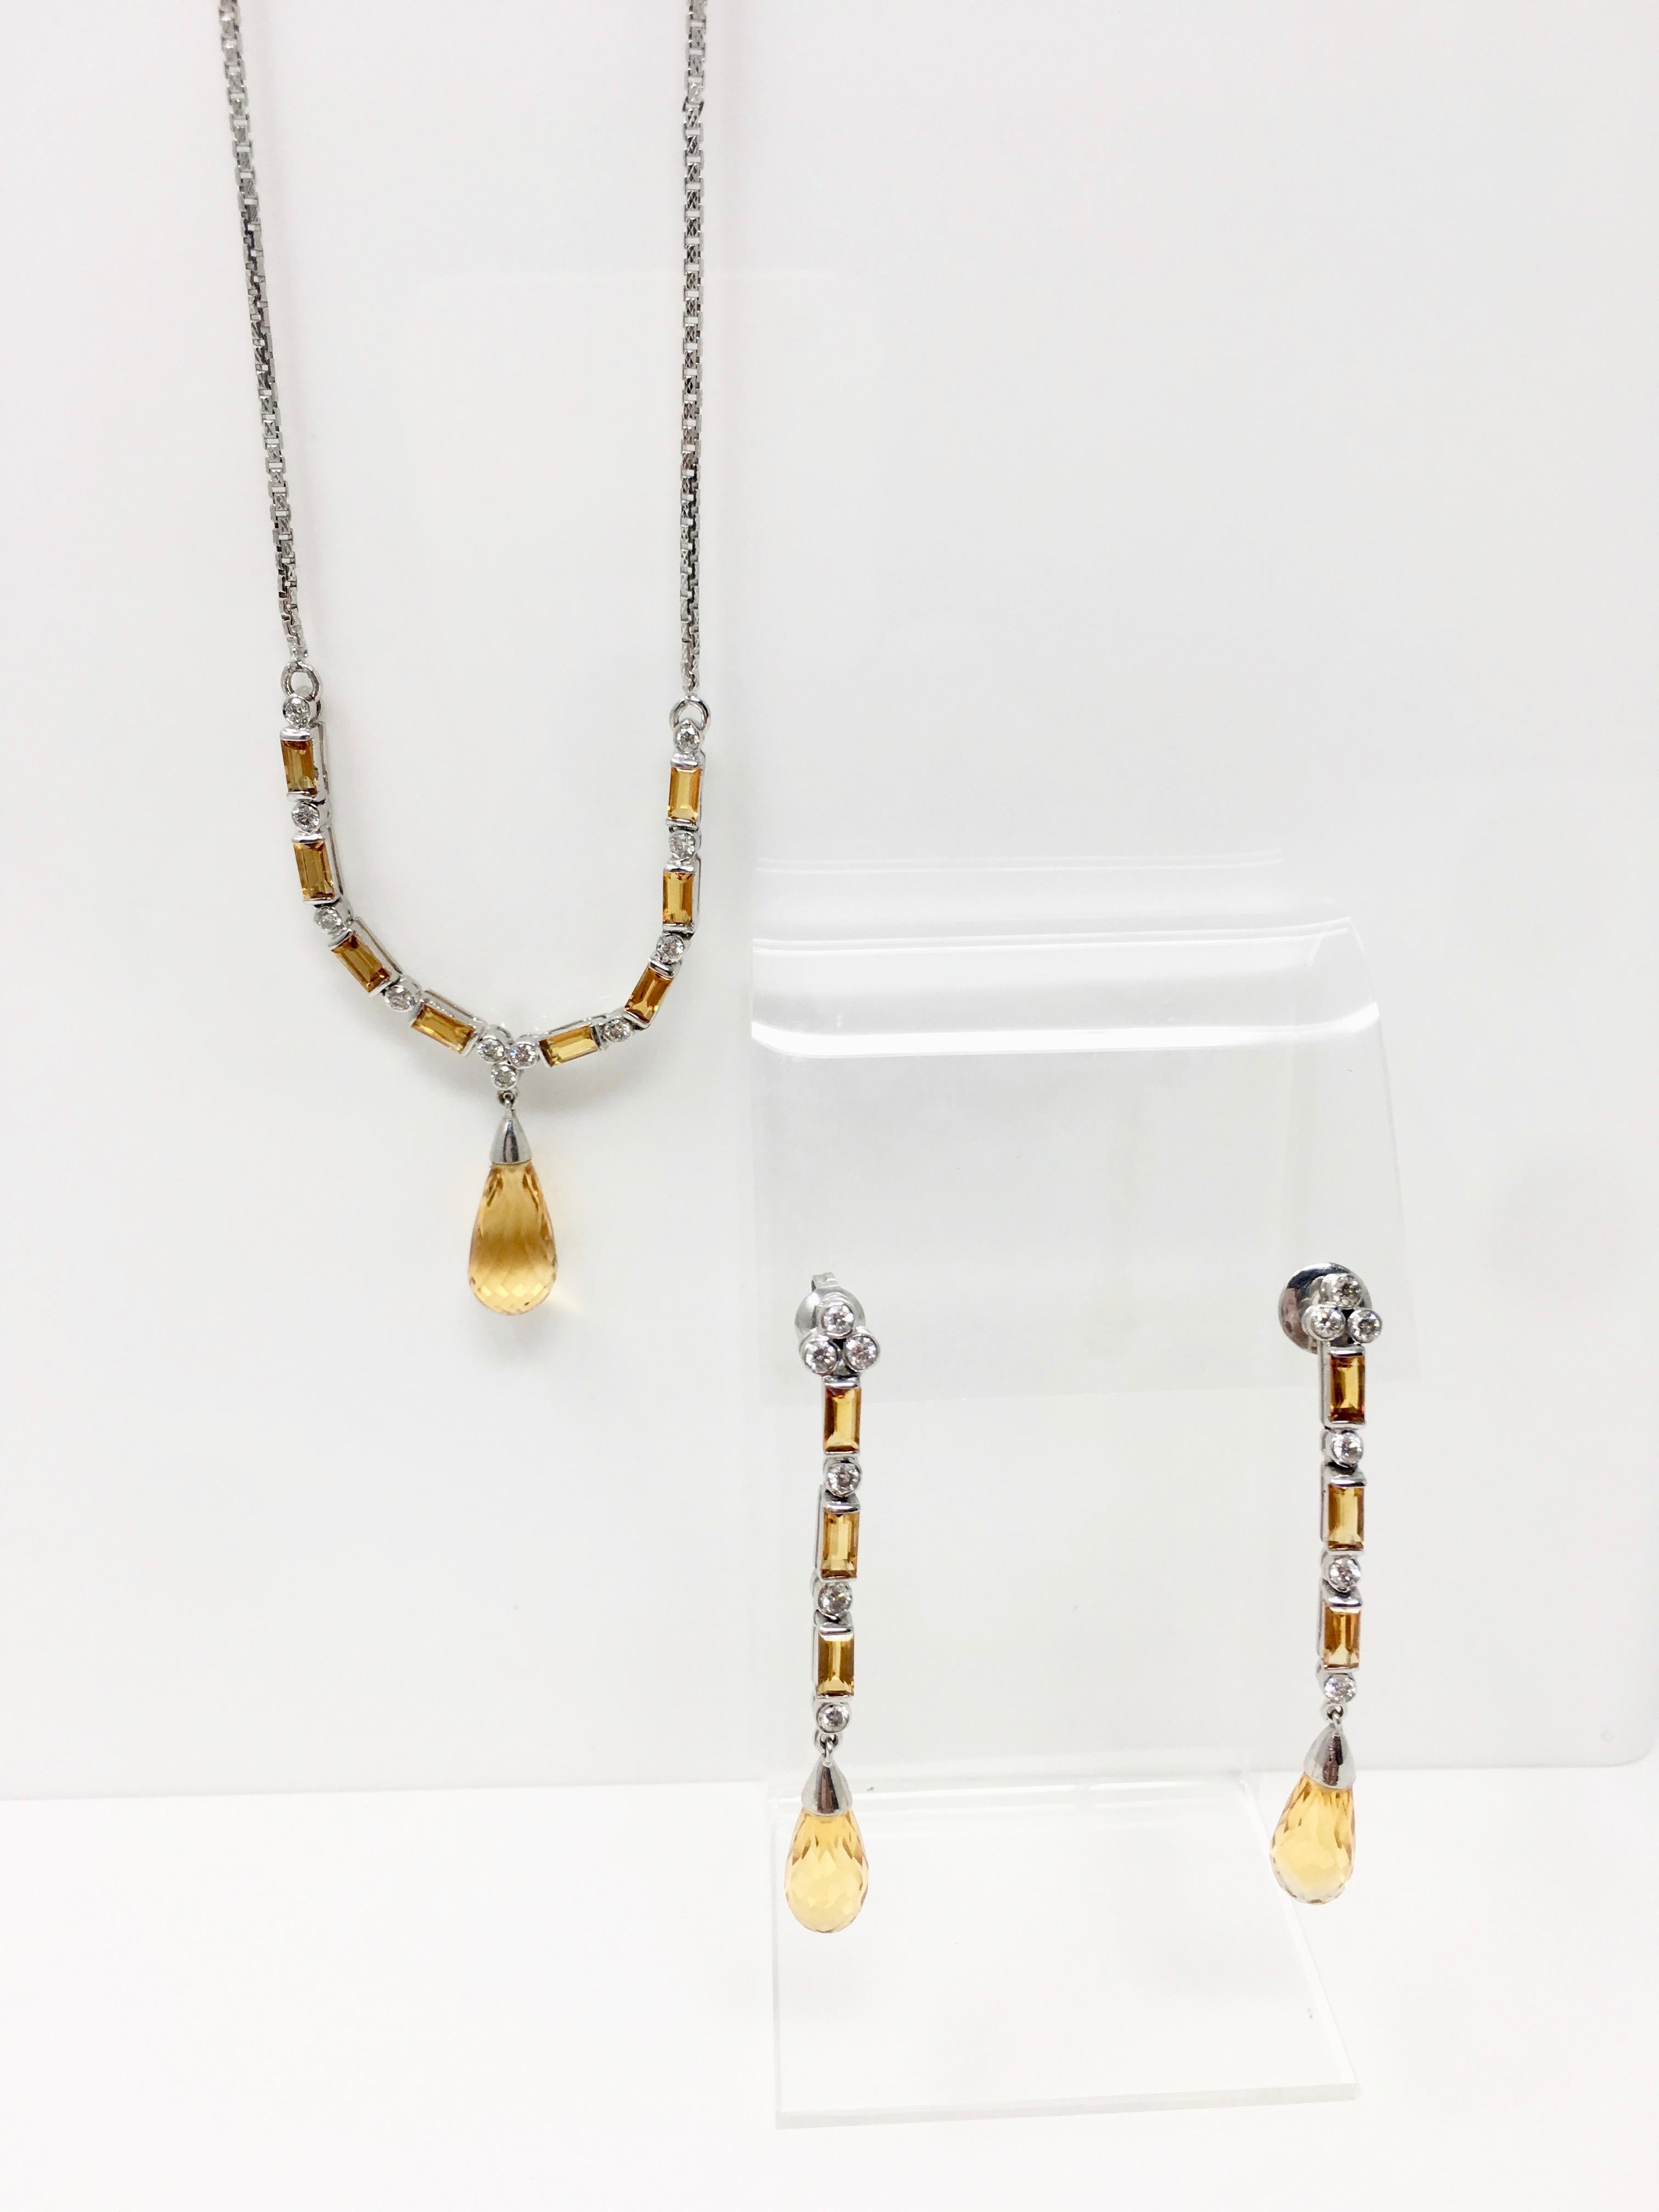 Cette parure de trois pendentifs en diamant et topaze est magnifiquement réalisée à la main en or blanc 18 carats par Moguldiam Inc. Elle est parfaite pour une tenue de jour ou de soirée. Le poids en carats de la topaze sur le pendentif est de 13,5